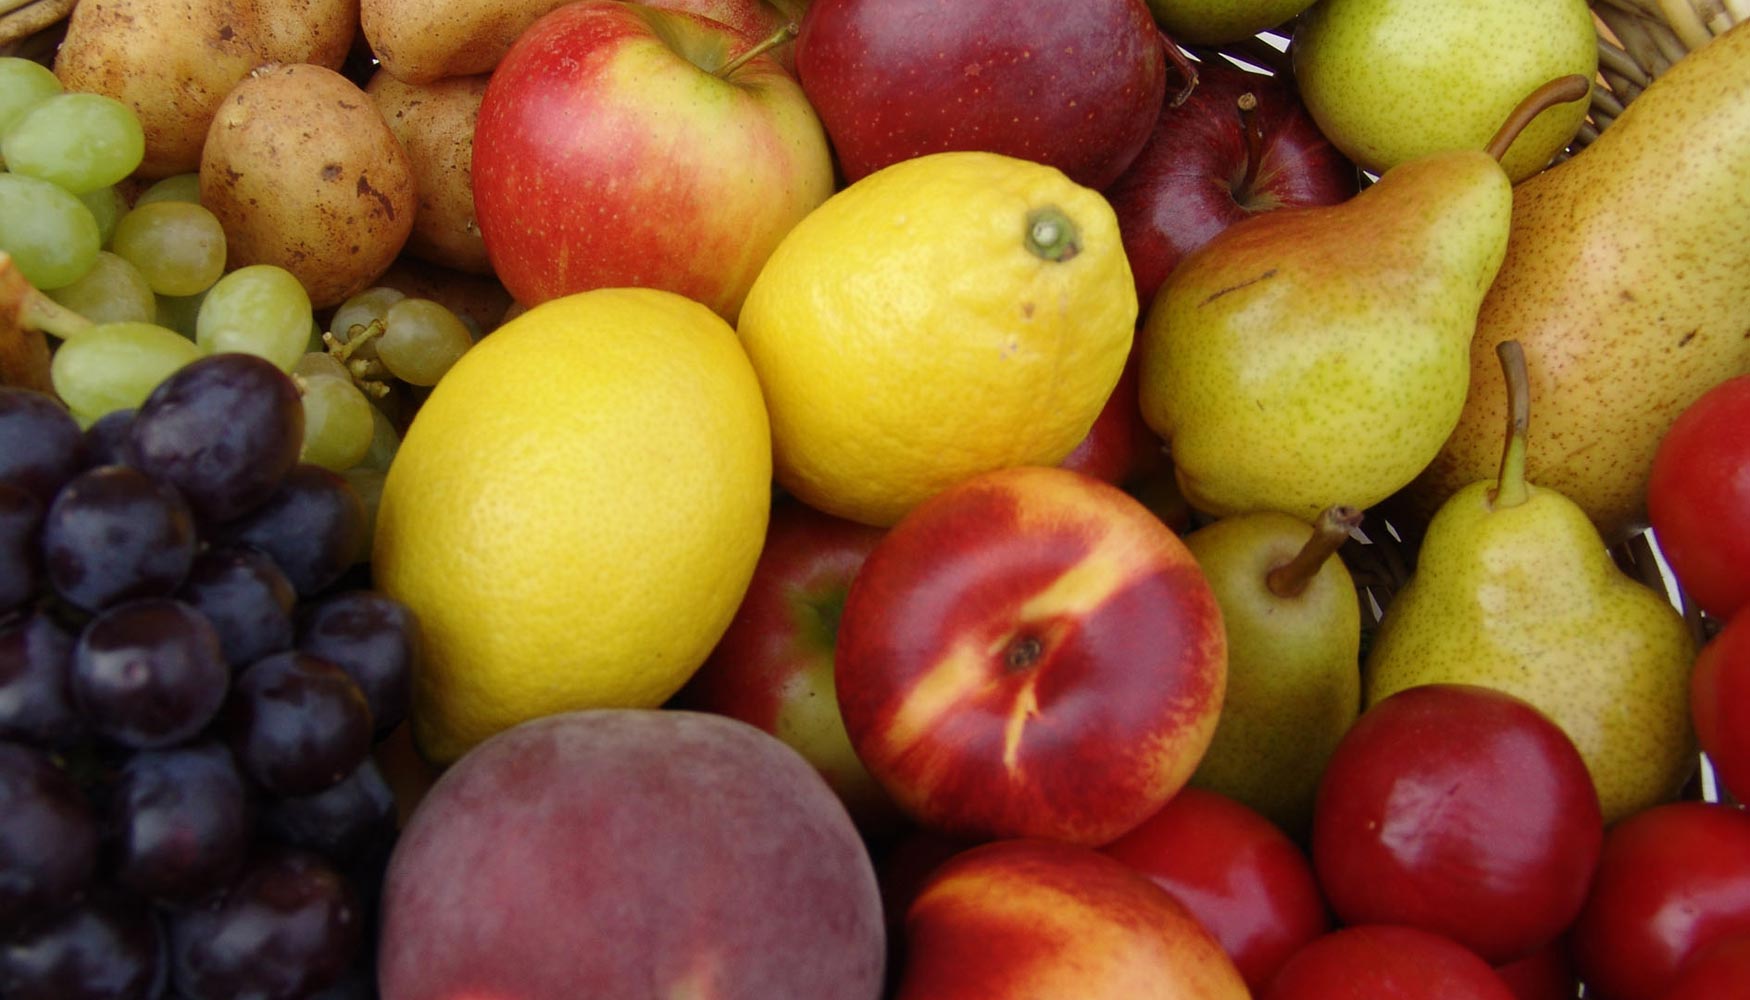 De la Unin Europea, Francia es el primer proveedor de frutas y hortalizas de Espaa, con 255 millones de euros